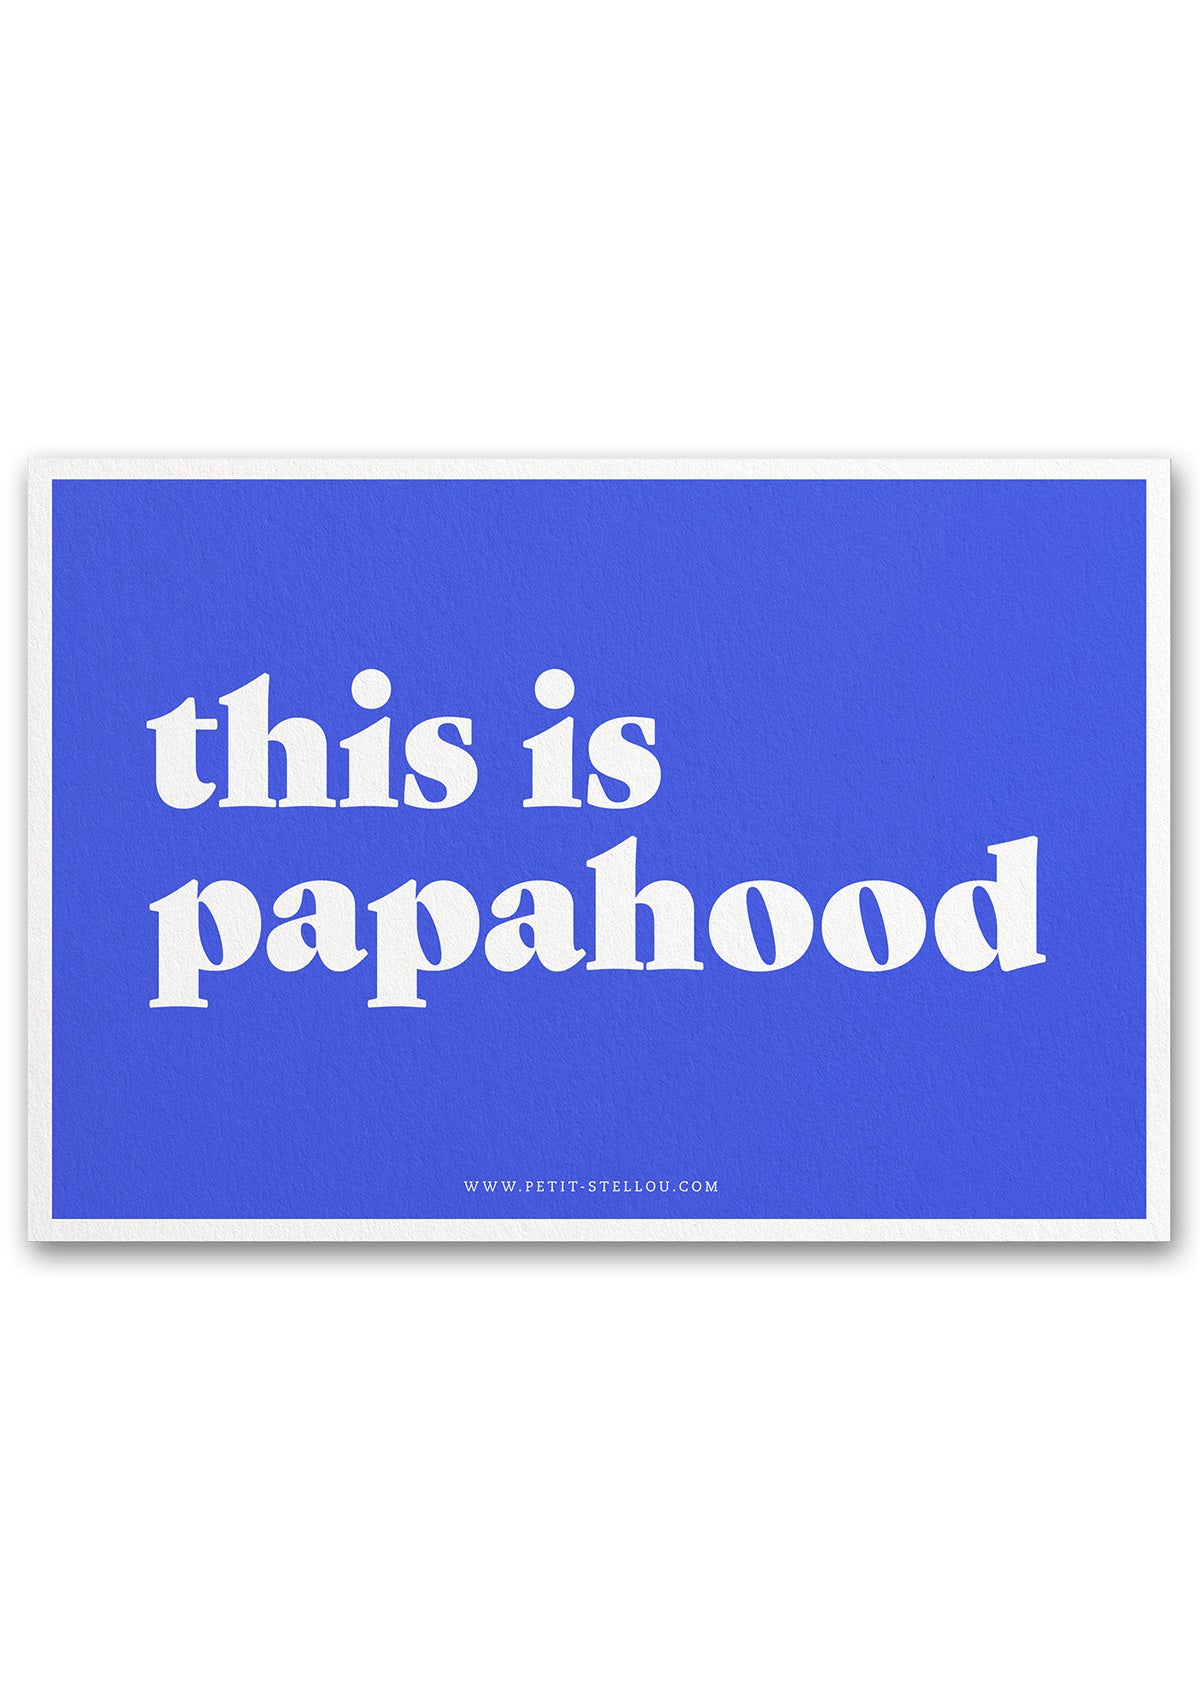 Grusskarte mit AUfschrift this is papahood in blau und weiss